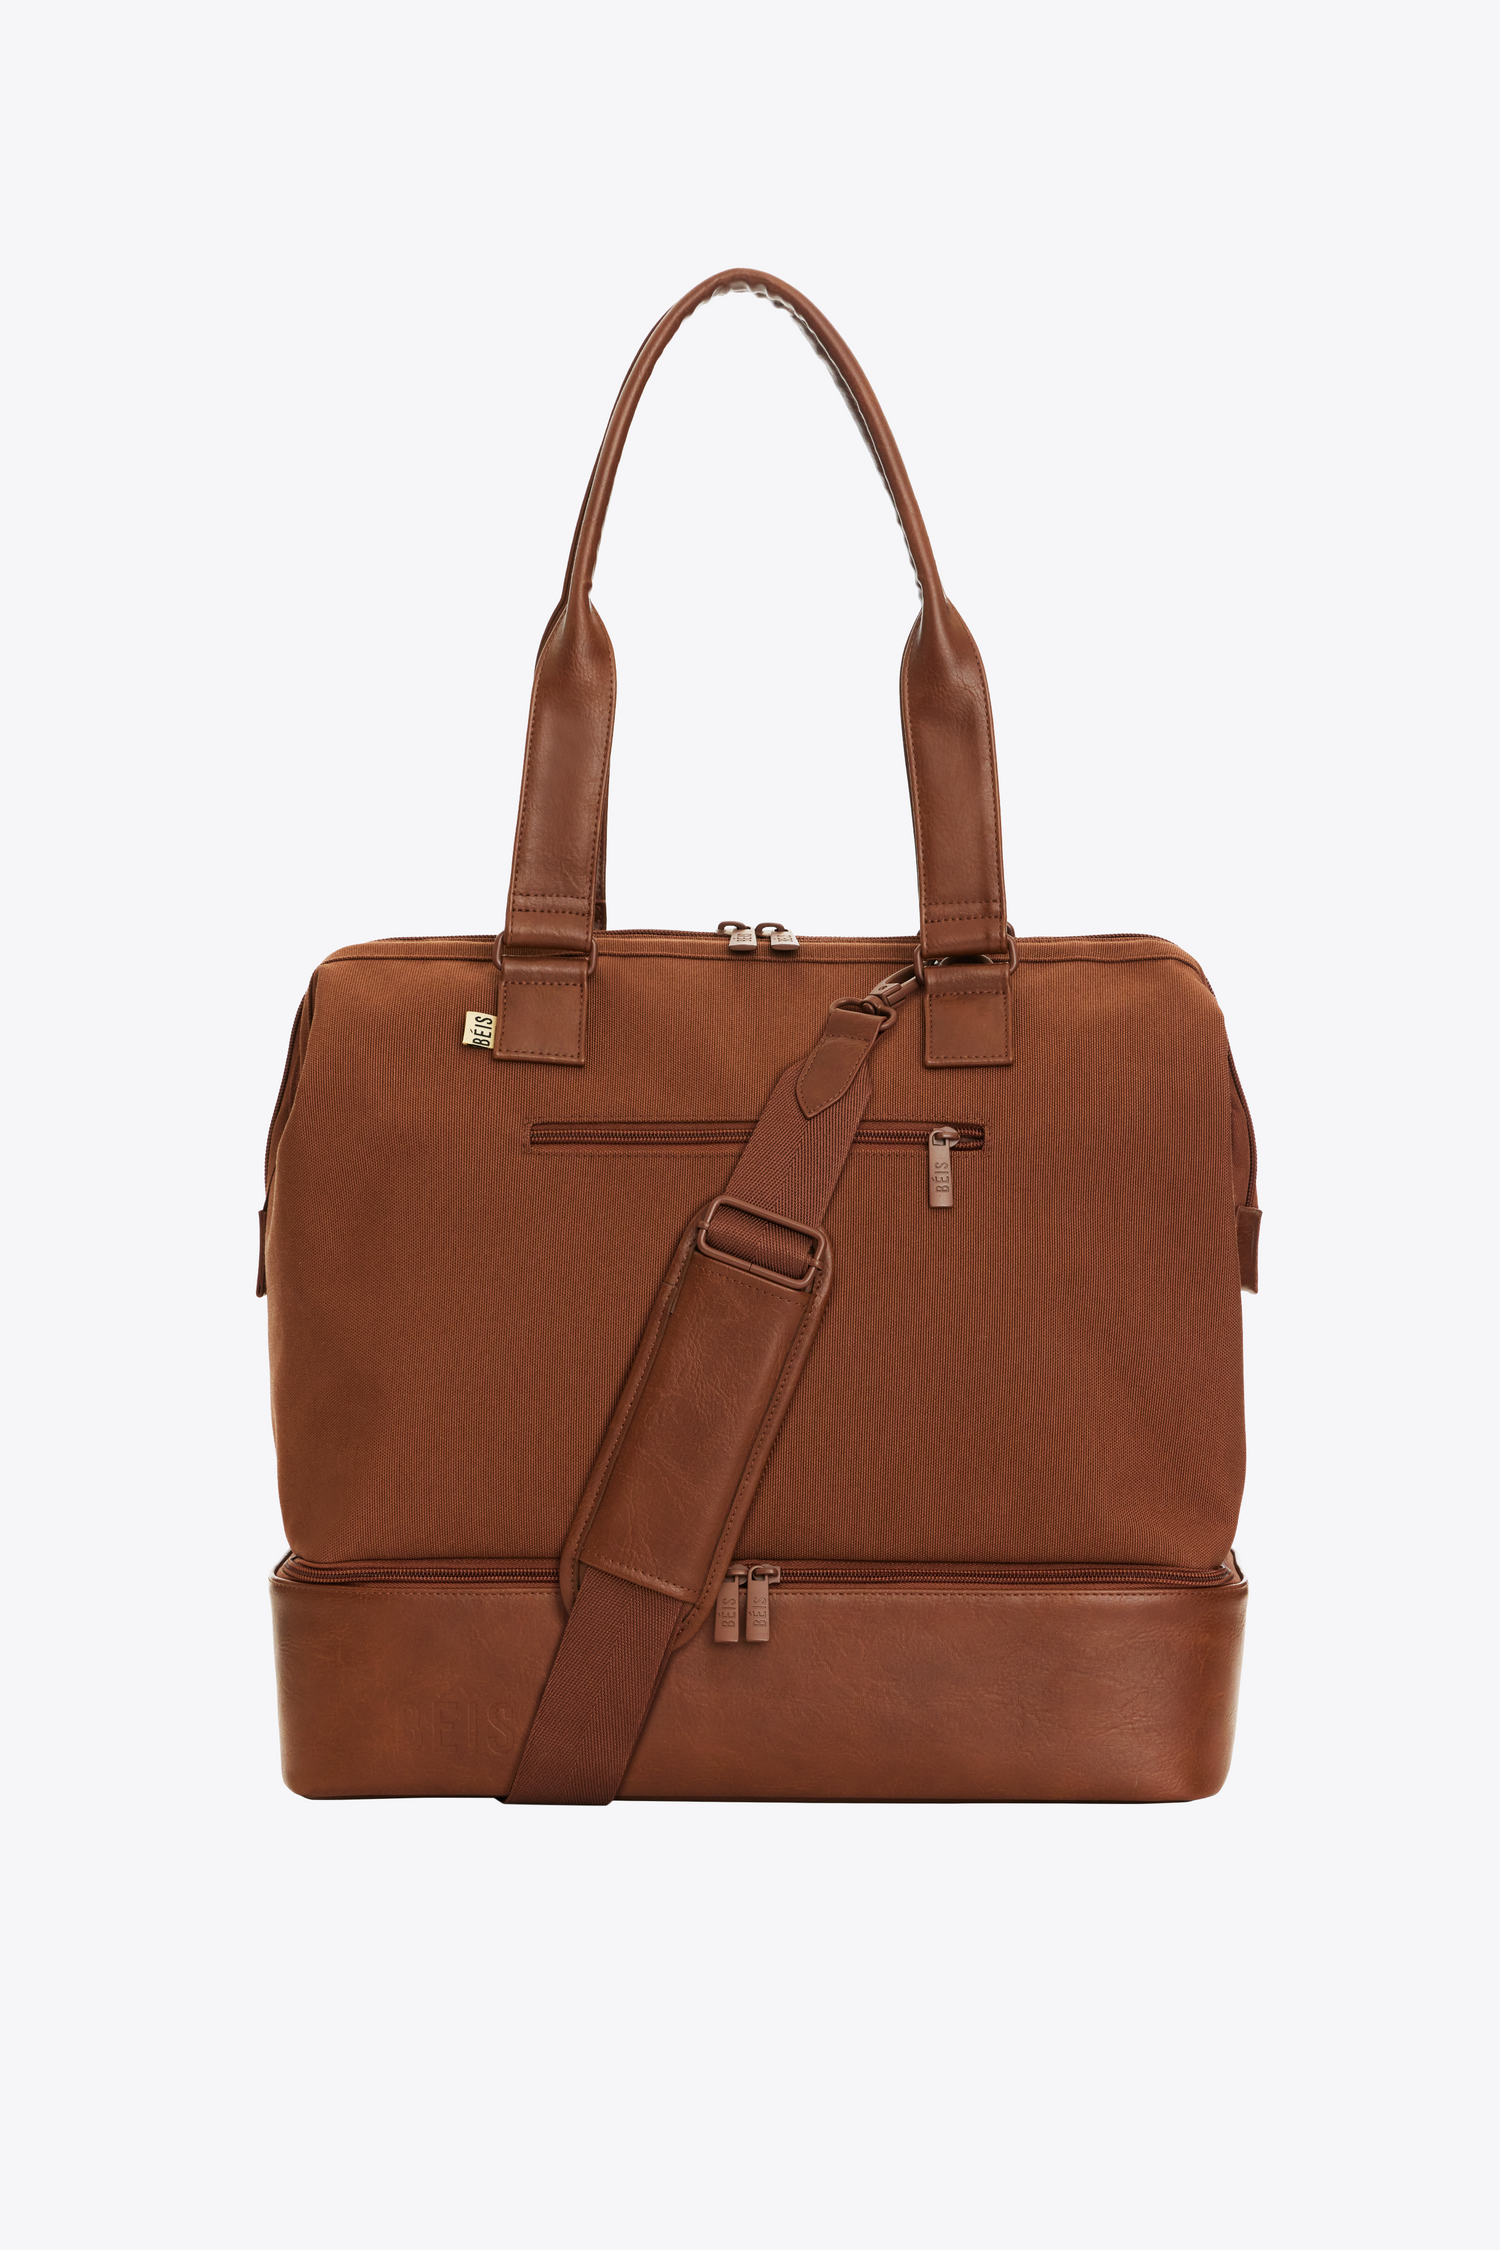 Brown Travel Bags, Work Totes & Weekenders